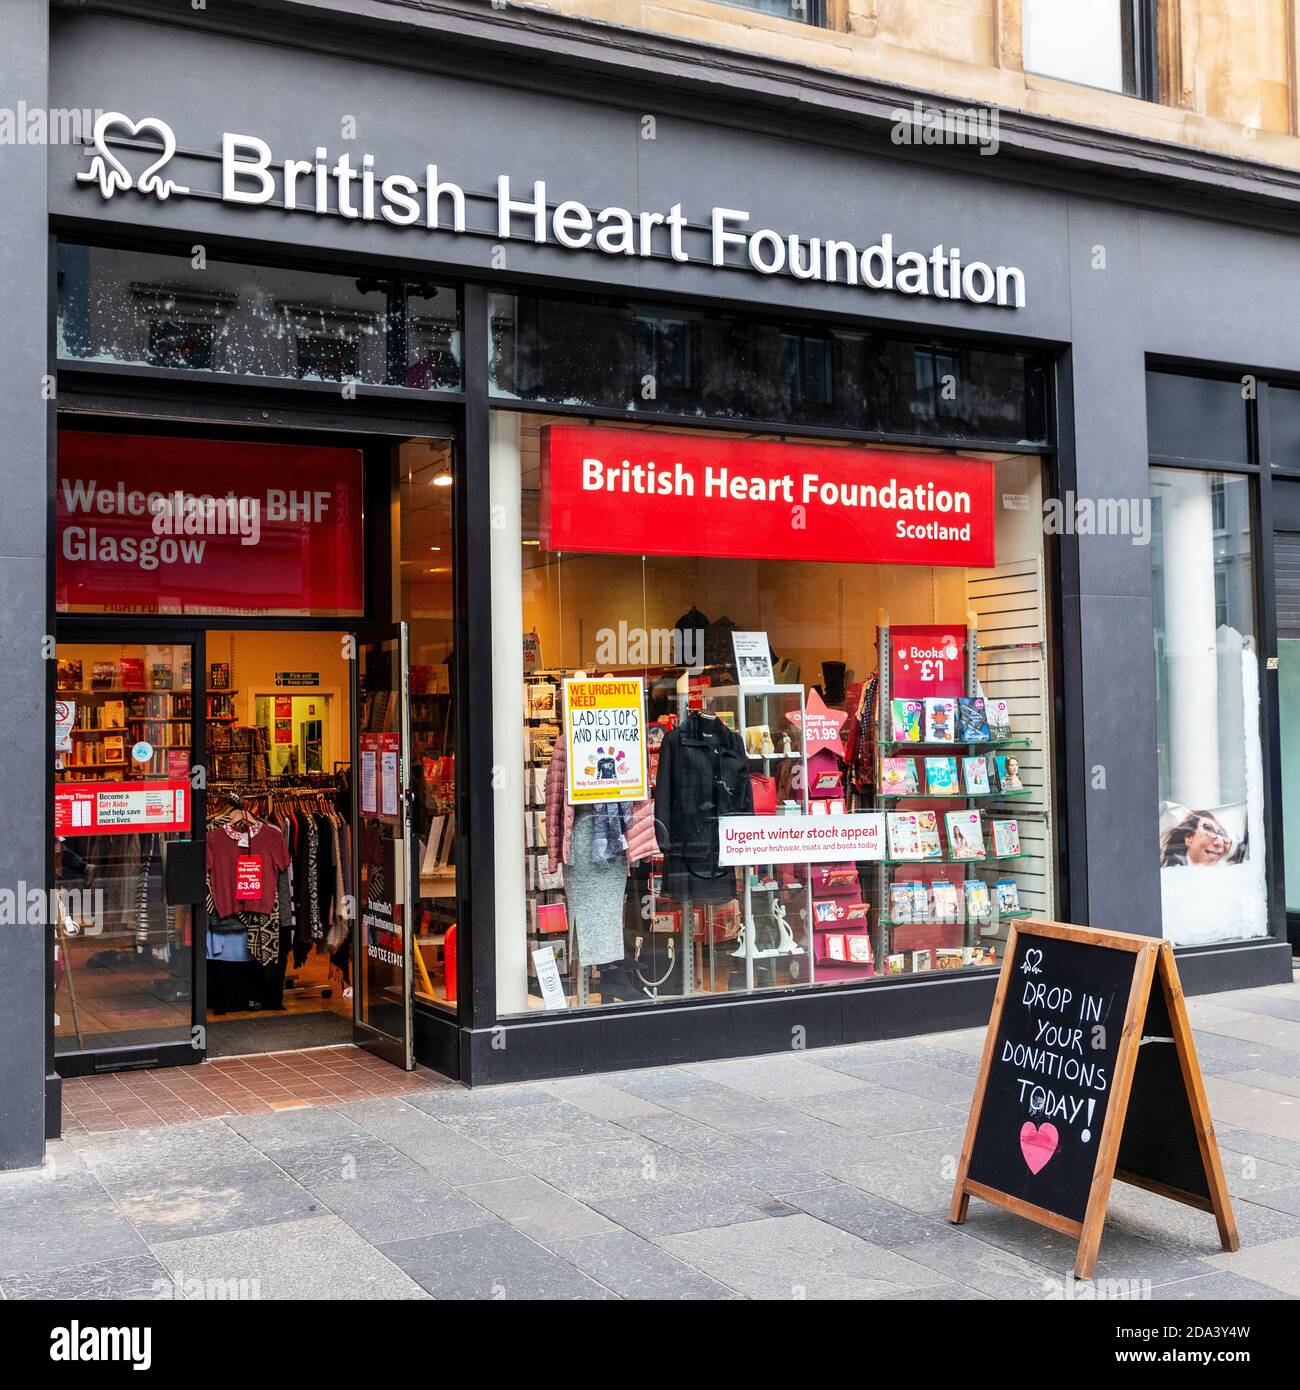 Faites les boutiques de l'organisme de bienfaisance national British Heart Foundation avec des panneaux publicitaires pour les dons, Sauchiehall Street, Glasgow, Royaume-Uni Banque D'Images